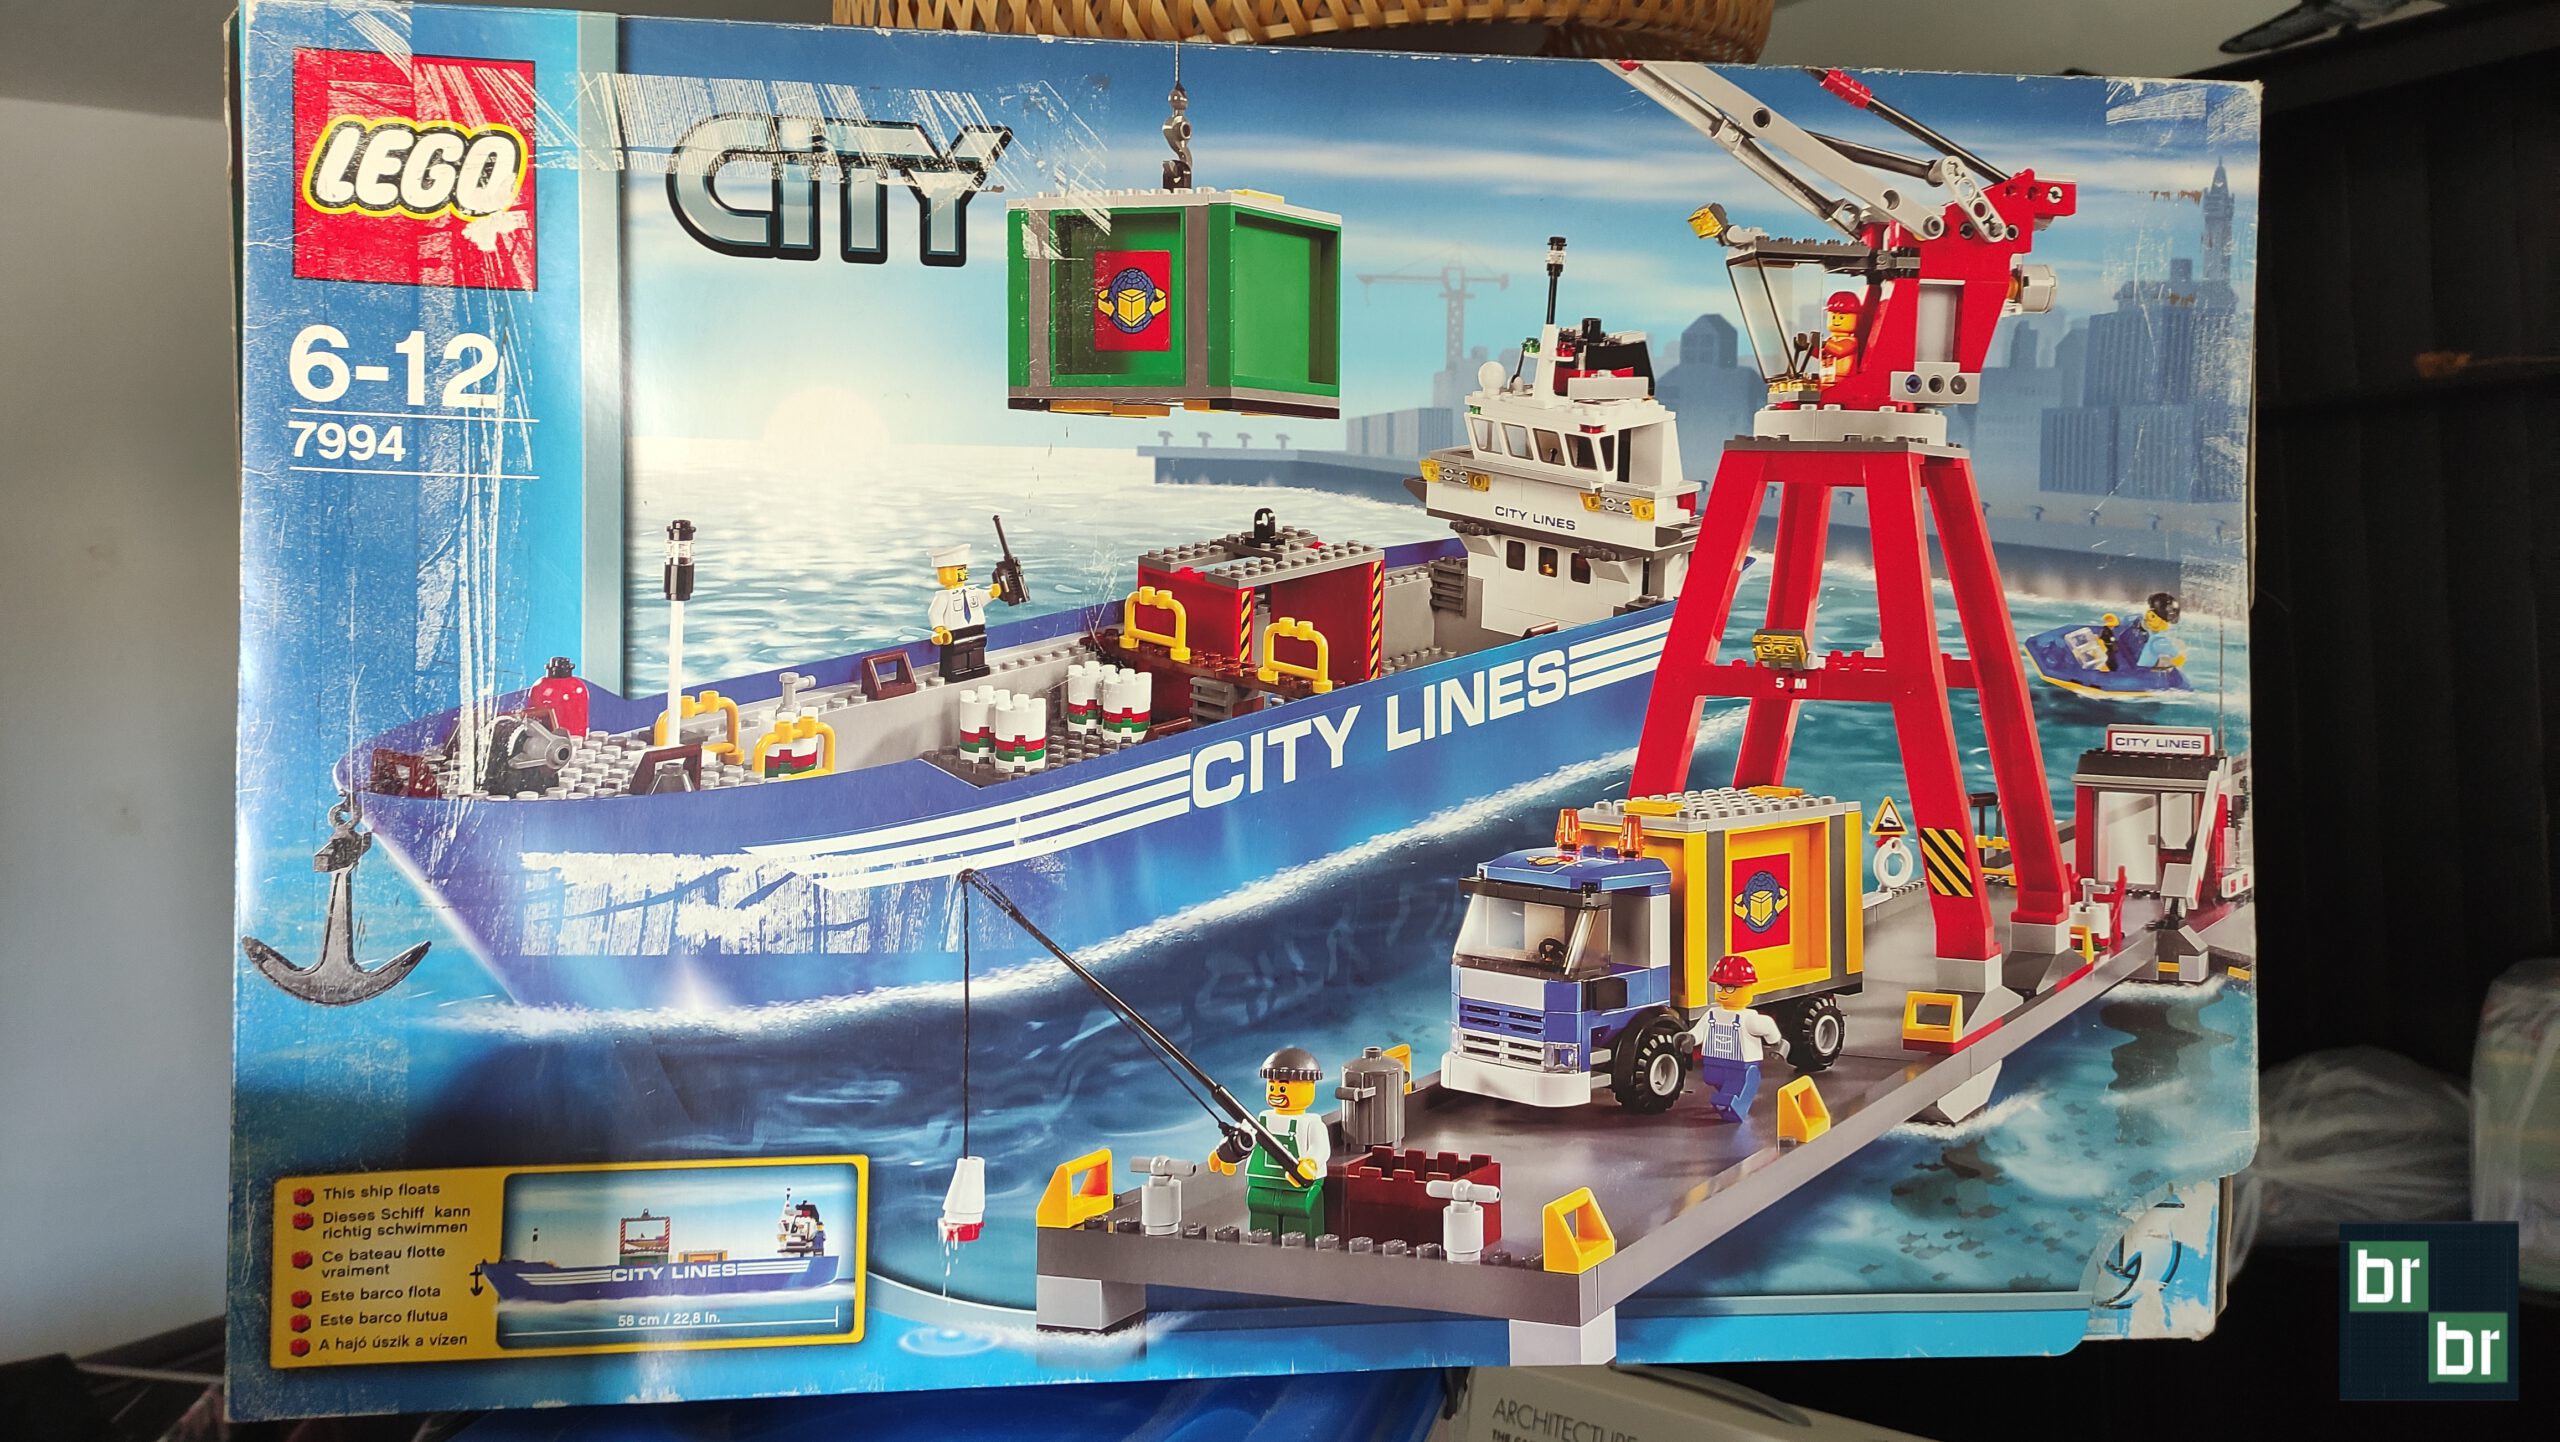 Jaaa, 7994 ergattert samt Originalkarton von Lego - der Klon von Lepin ist schon da.